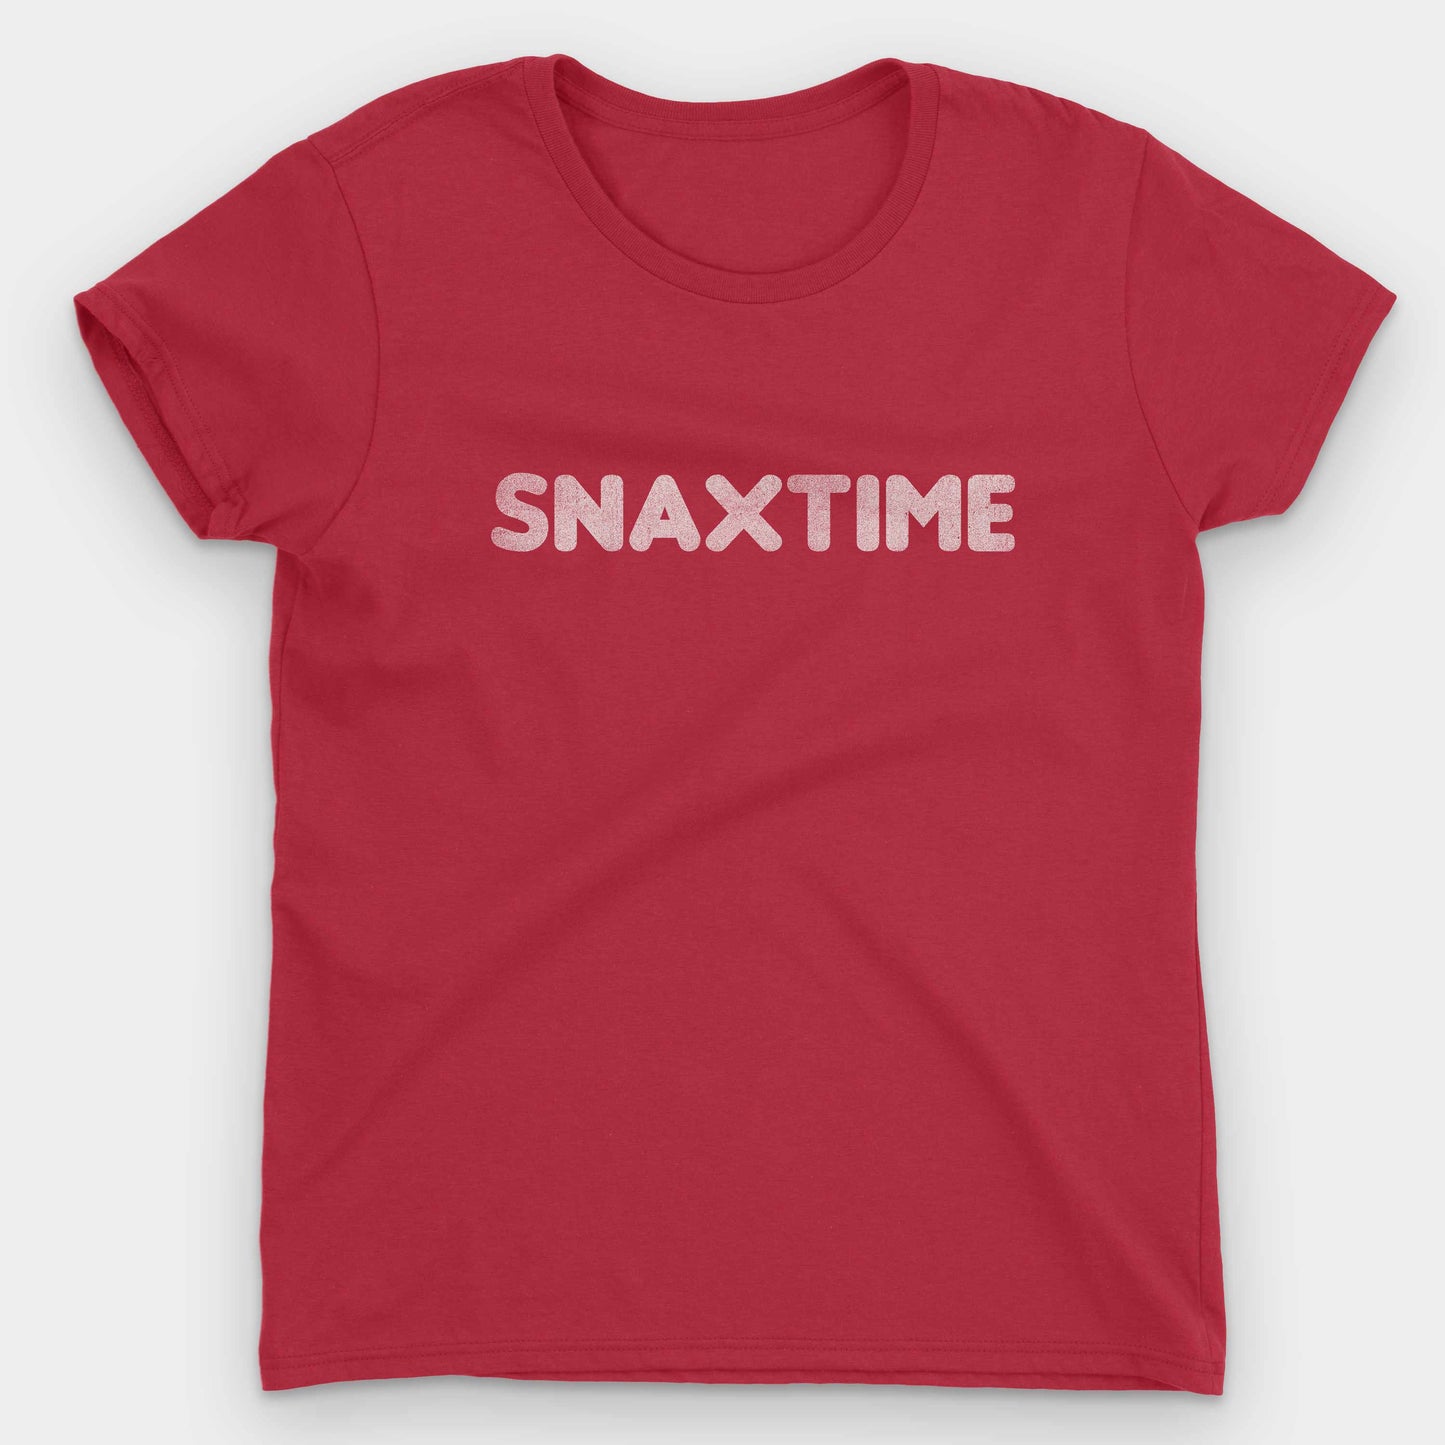  Snaxtime Summer Job Women's T-Shirt by Snaxtime